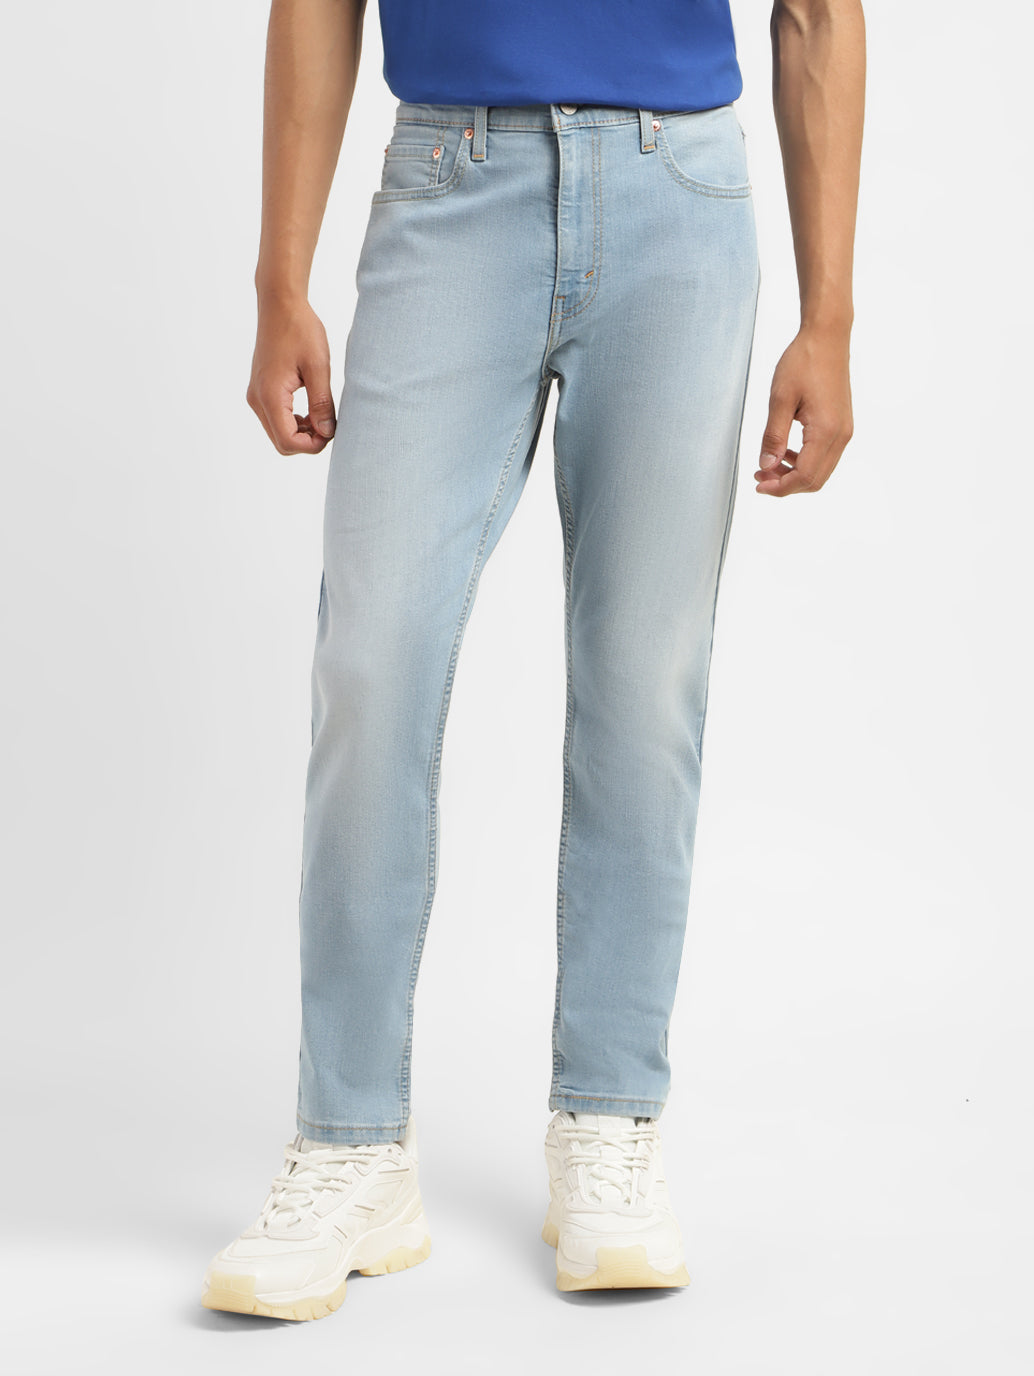 Plain Blue Levis Men Jeans, Slim Fit at Rs 650/piece in Kurnool